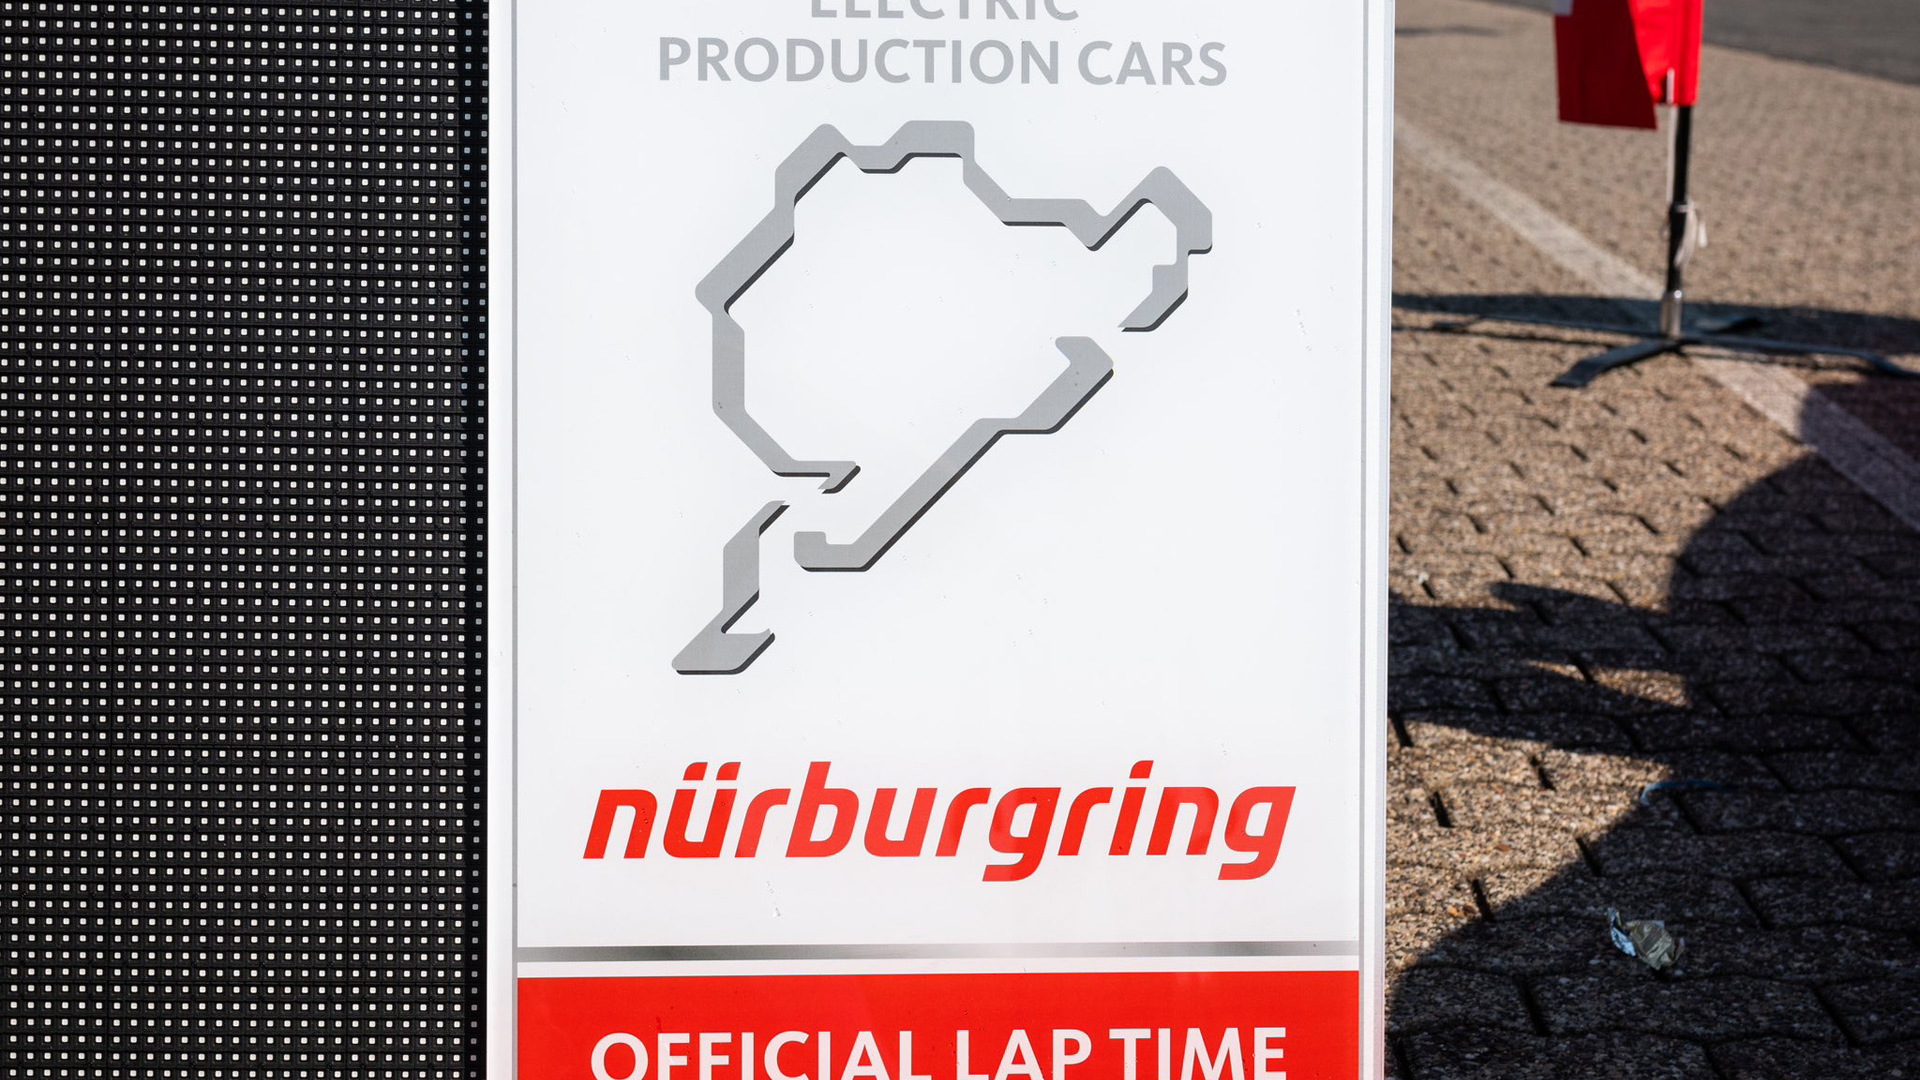 Tesla Model S Plaid Track Package sets 7:25.231 Nürburgring lap time